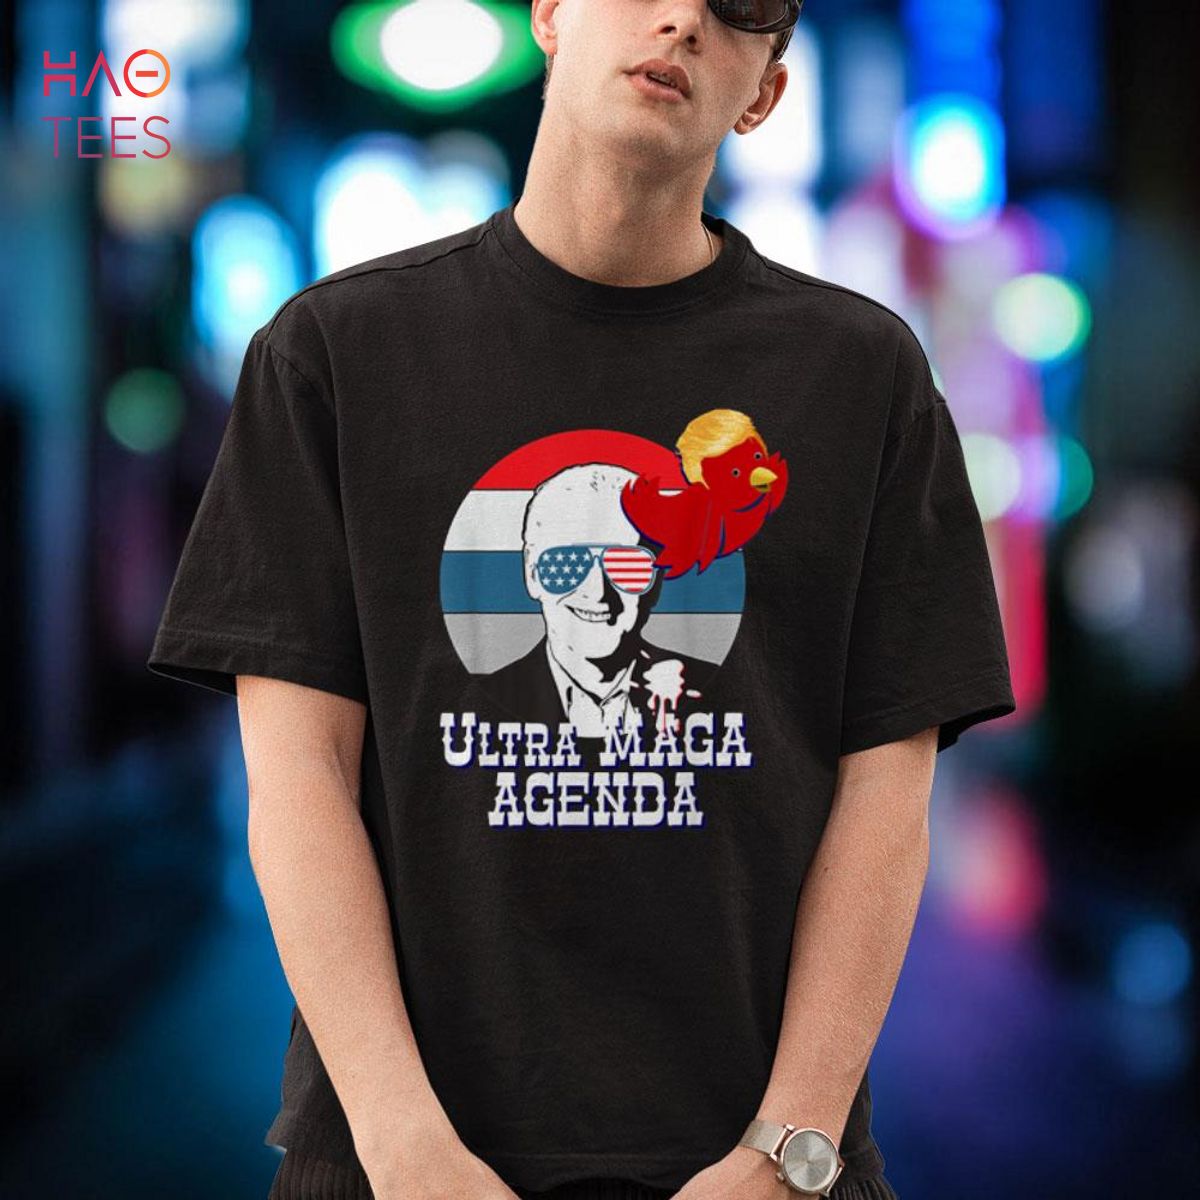 Ultra MAGA Agenda Shirt